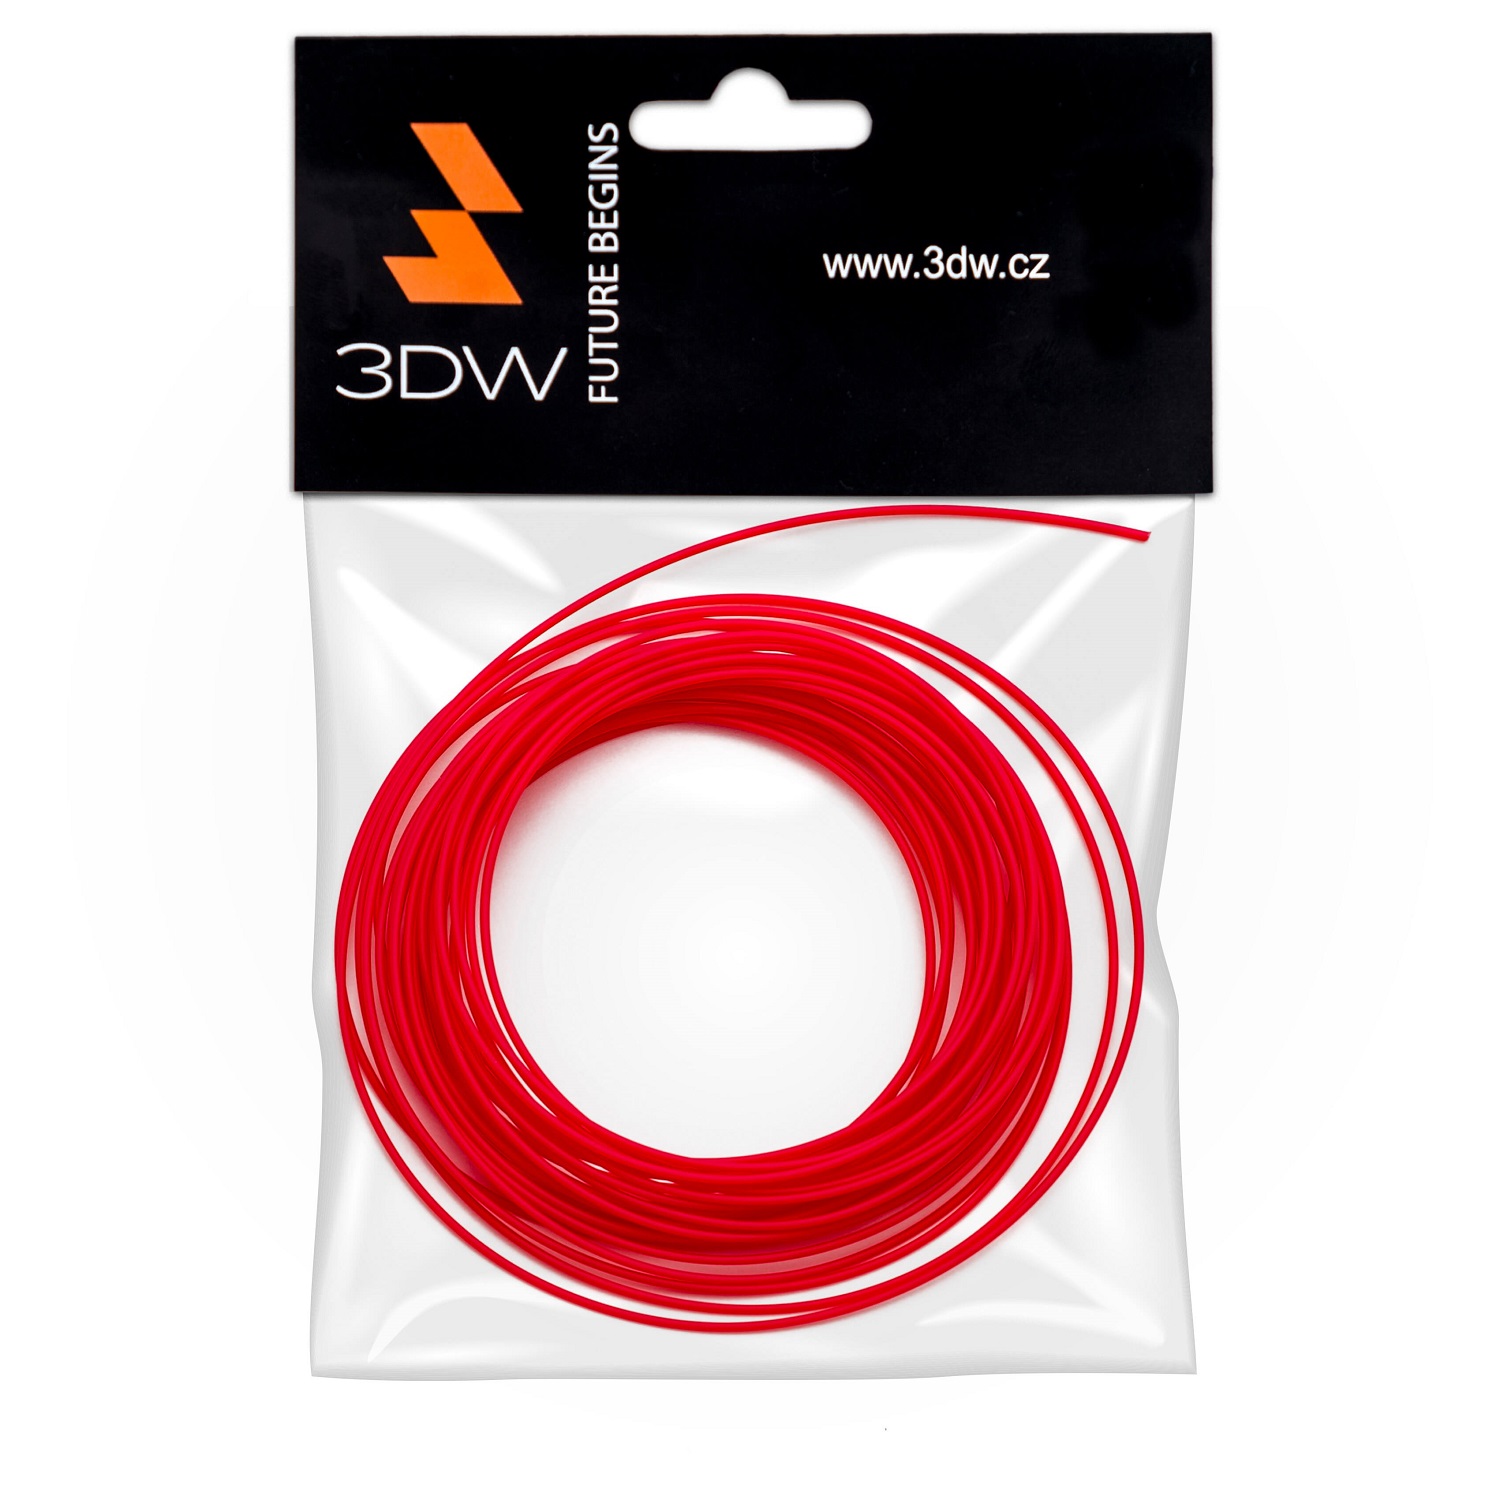 Tisková struna 3DW (filament) ABS, 1,75mm, 10m, červená, 220-250°C